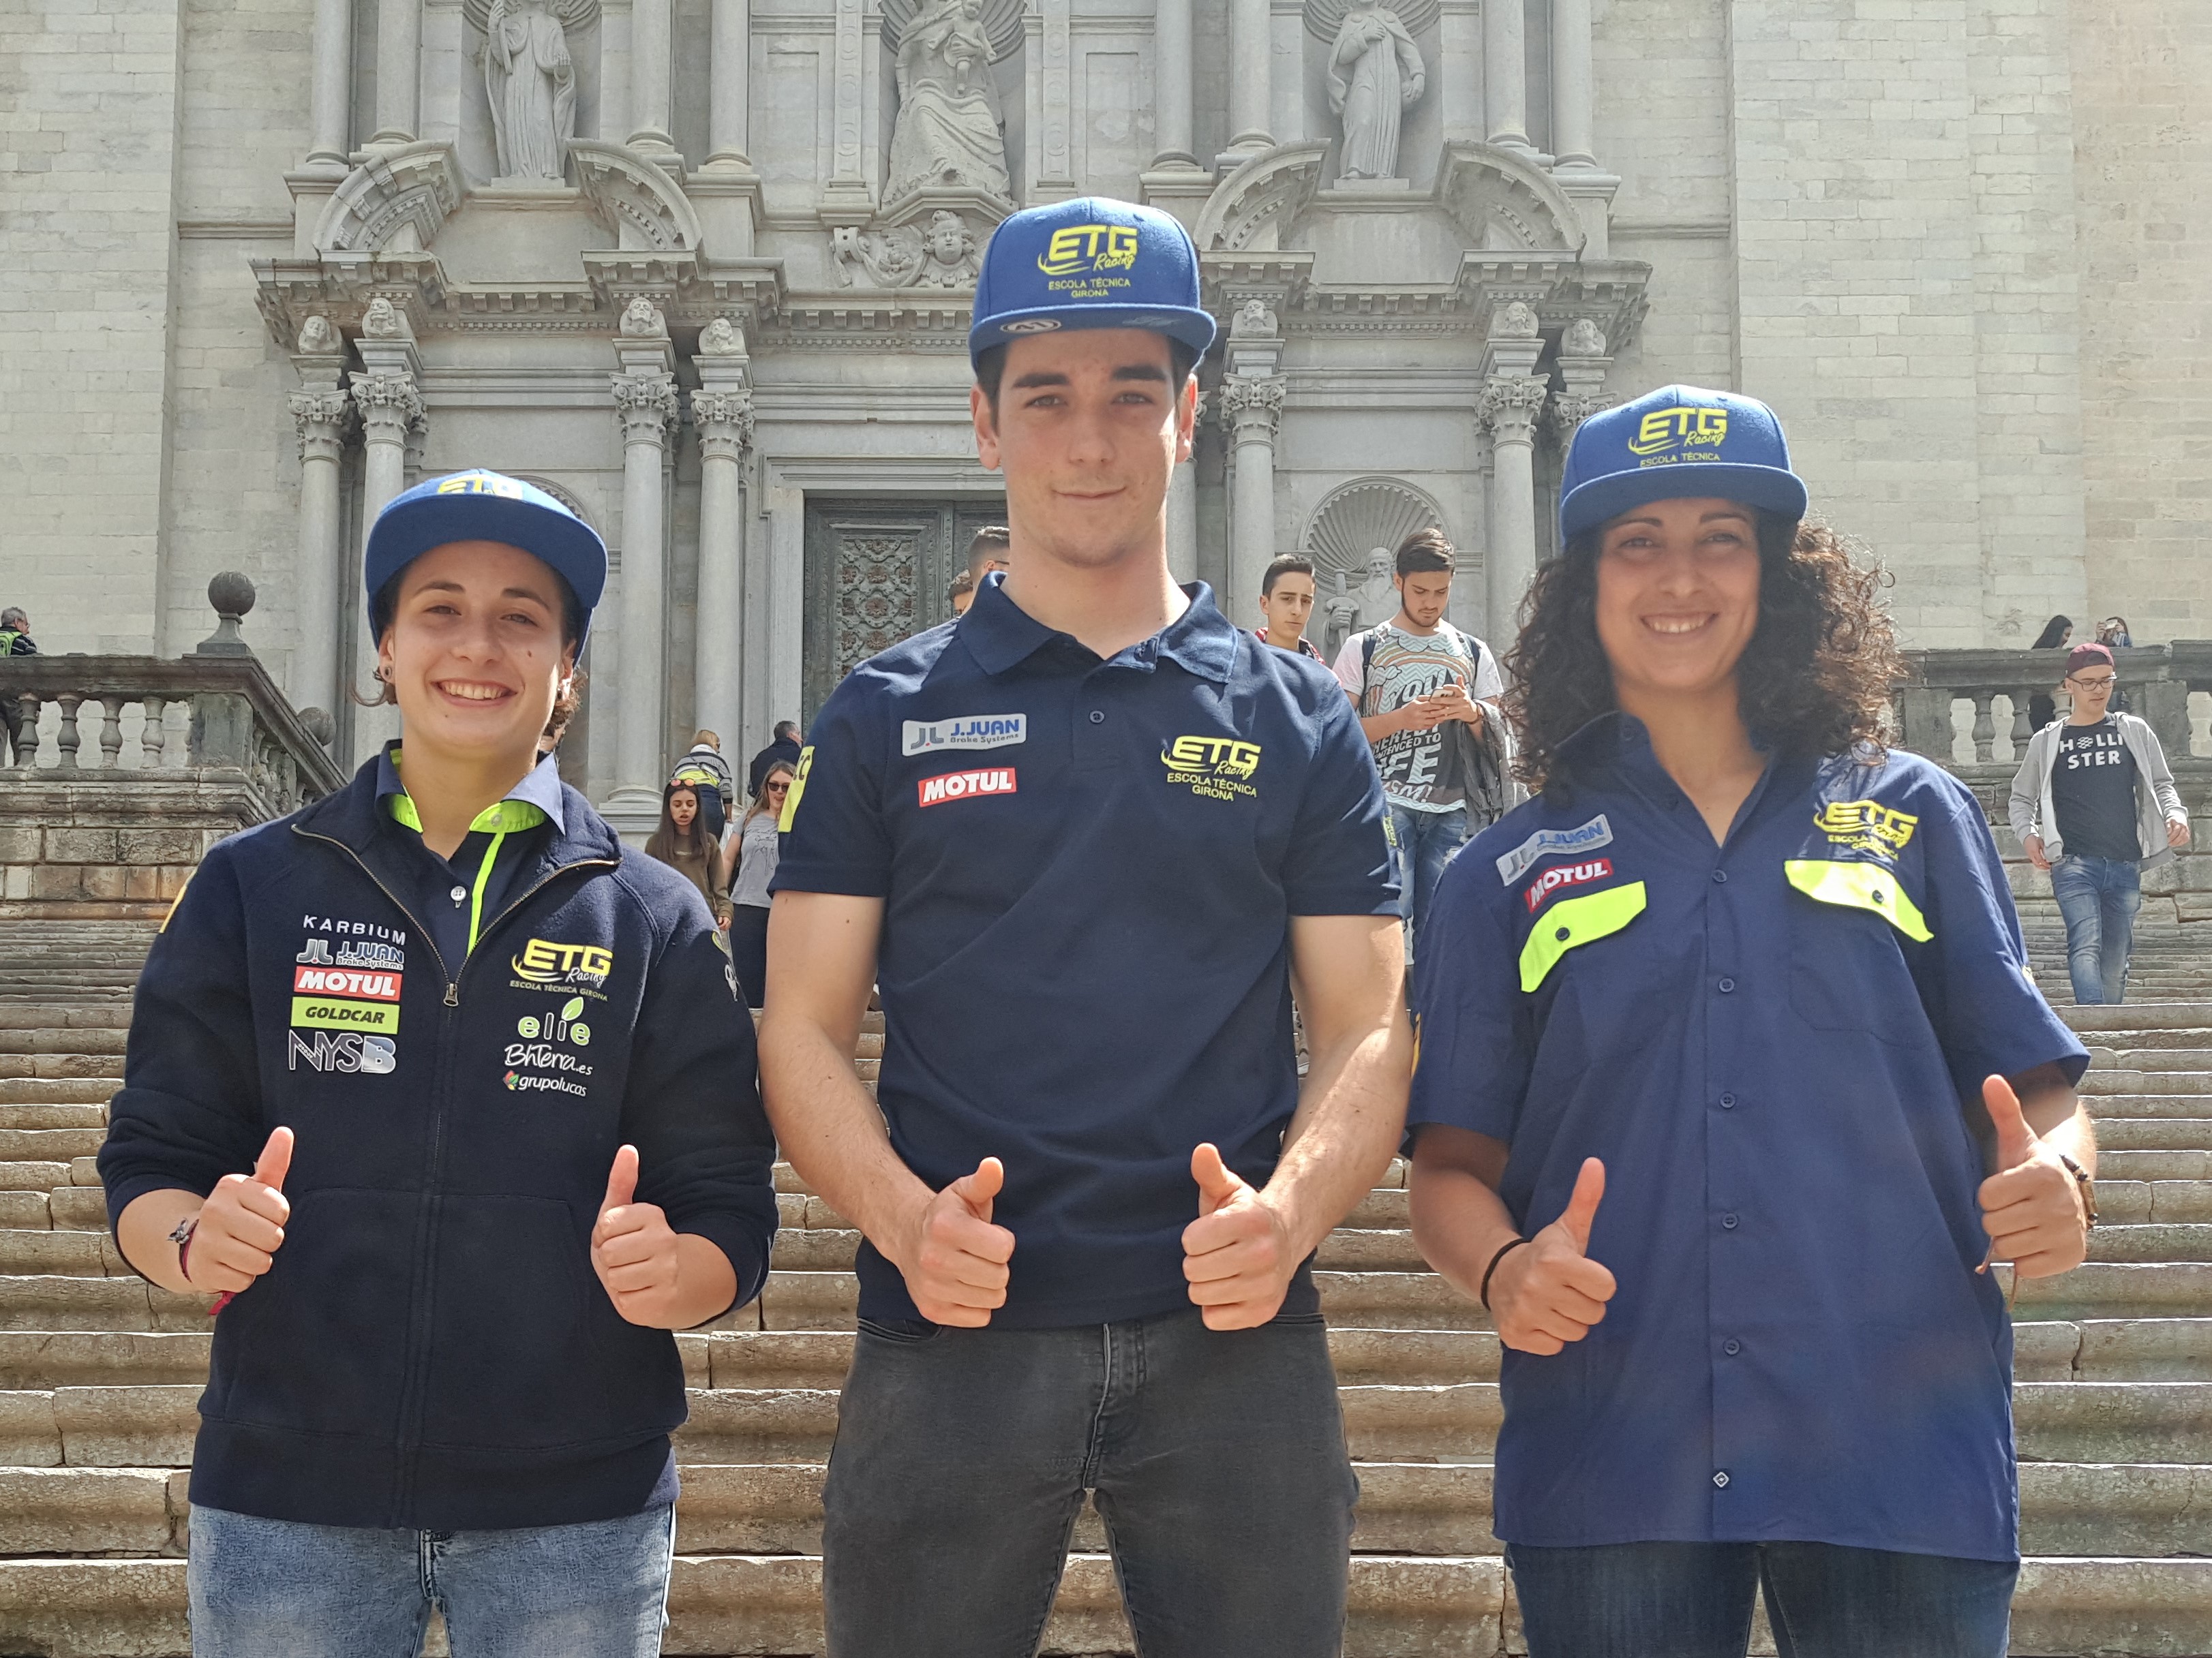 Presentación del equipo gerundense de motociclismo, ETG Racing, a la Diputación de Girona